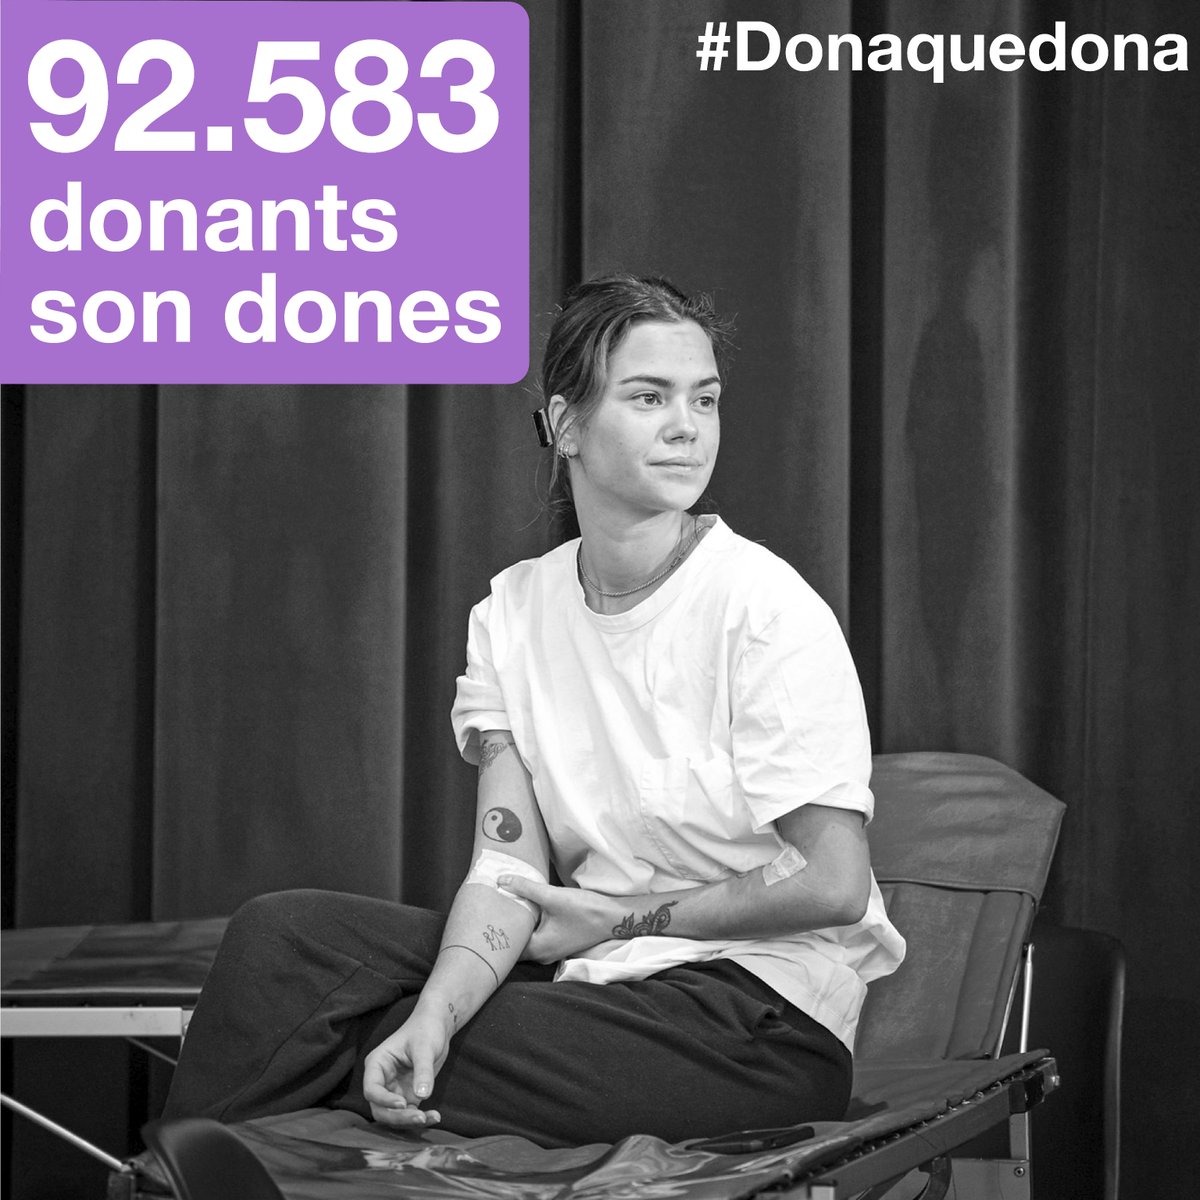 Amb orgull compartim que a Catalunya 92.583 donants son dones. El seu compromís i generositat són un exemple per a tothom. #DonaqueDona #DiaDeLaDona #Donapower #DonacióDeSang #Diainternacionaldeladona #8M #Diainternacionaldelamujer